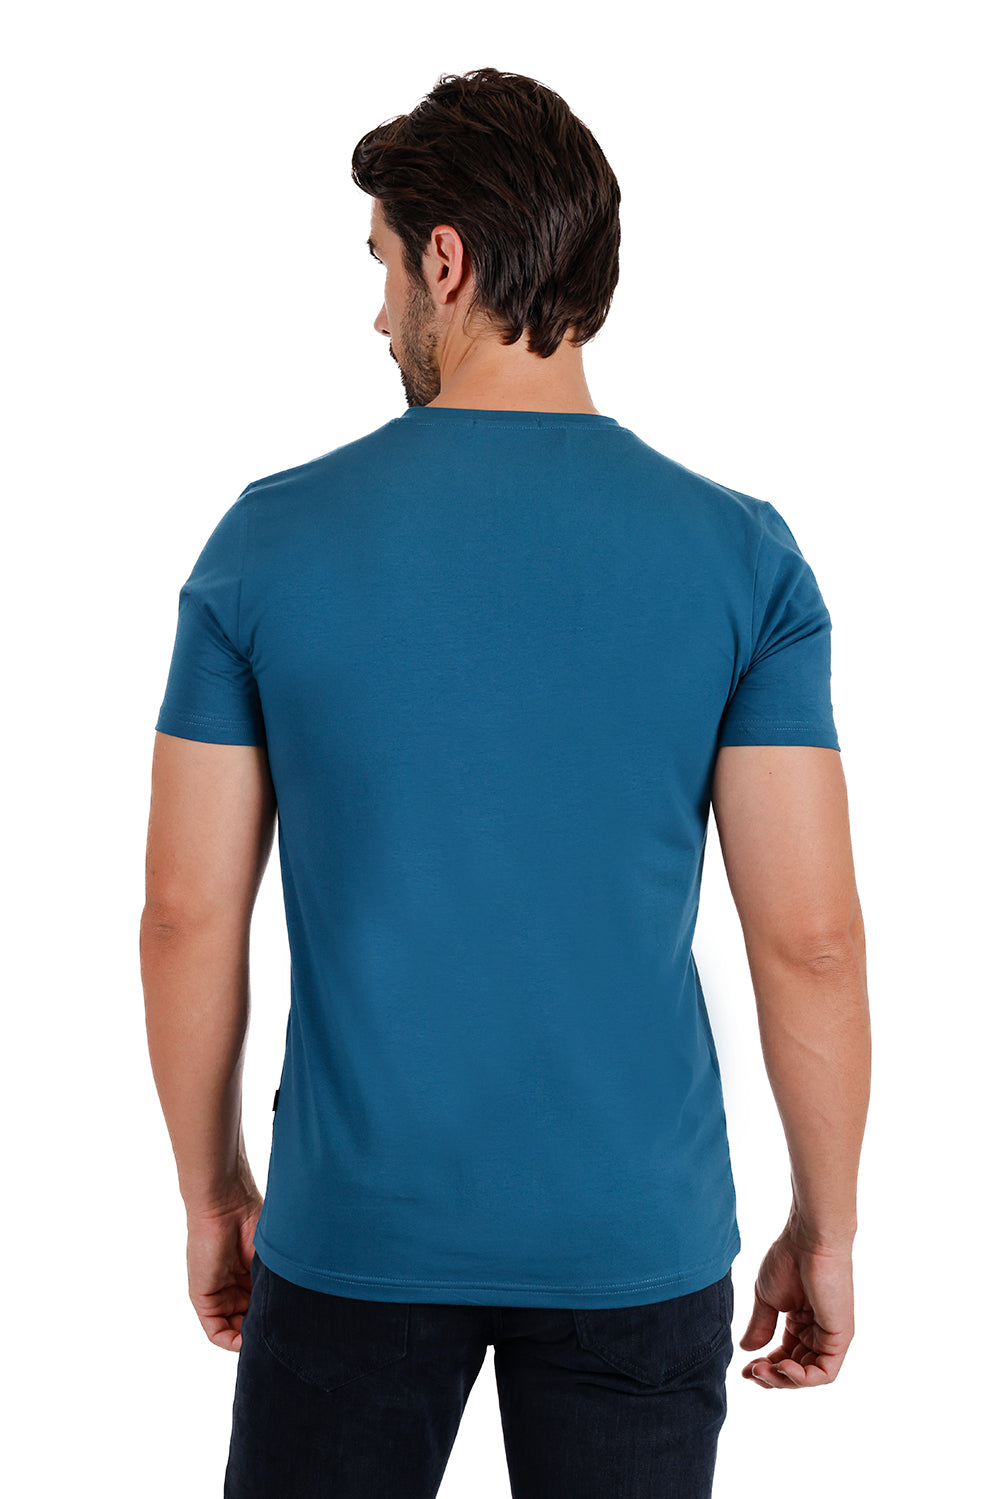 BARABAS Men's Solid Color V-neck T-shirts TV216 Teal